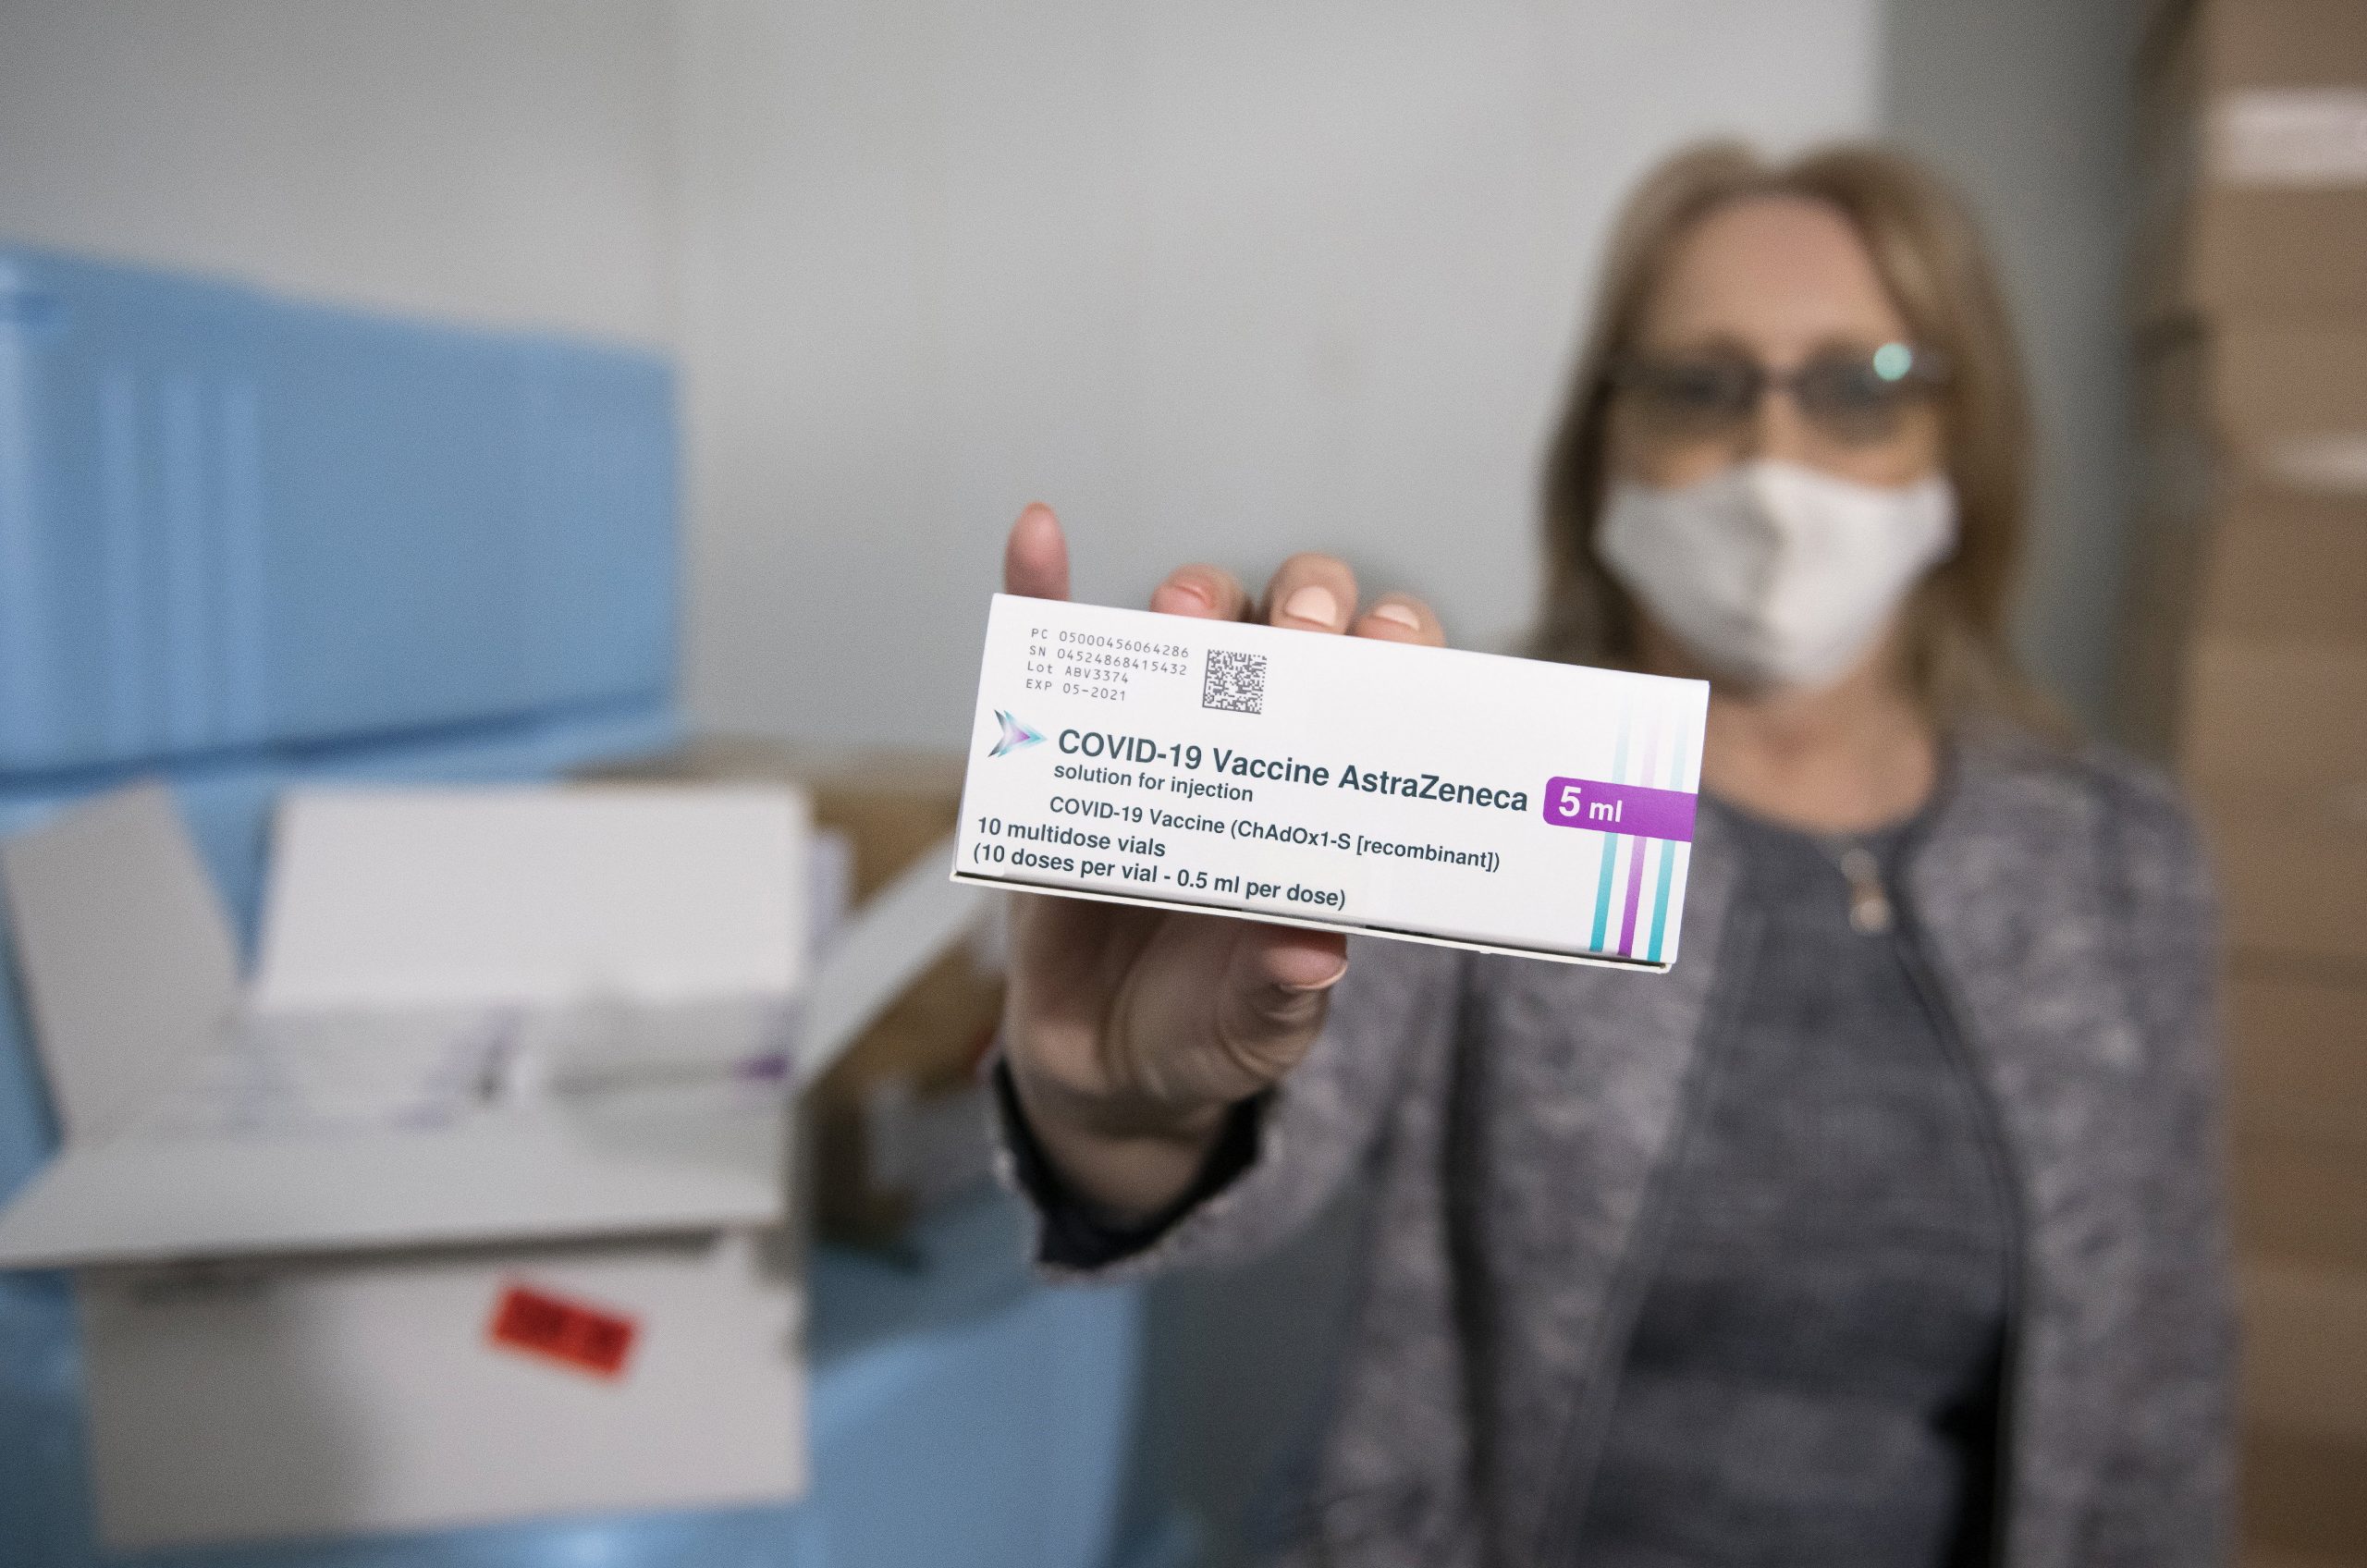 Covid-Pass: EU würde Ungarn helfen, die mit östlichen Vakzinen geimpft wurden